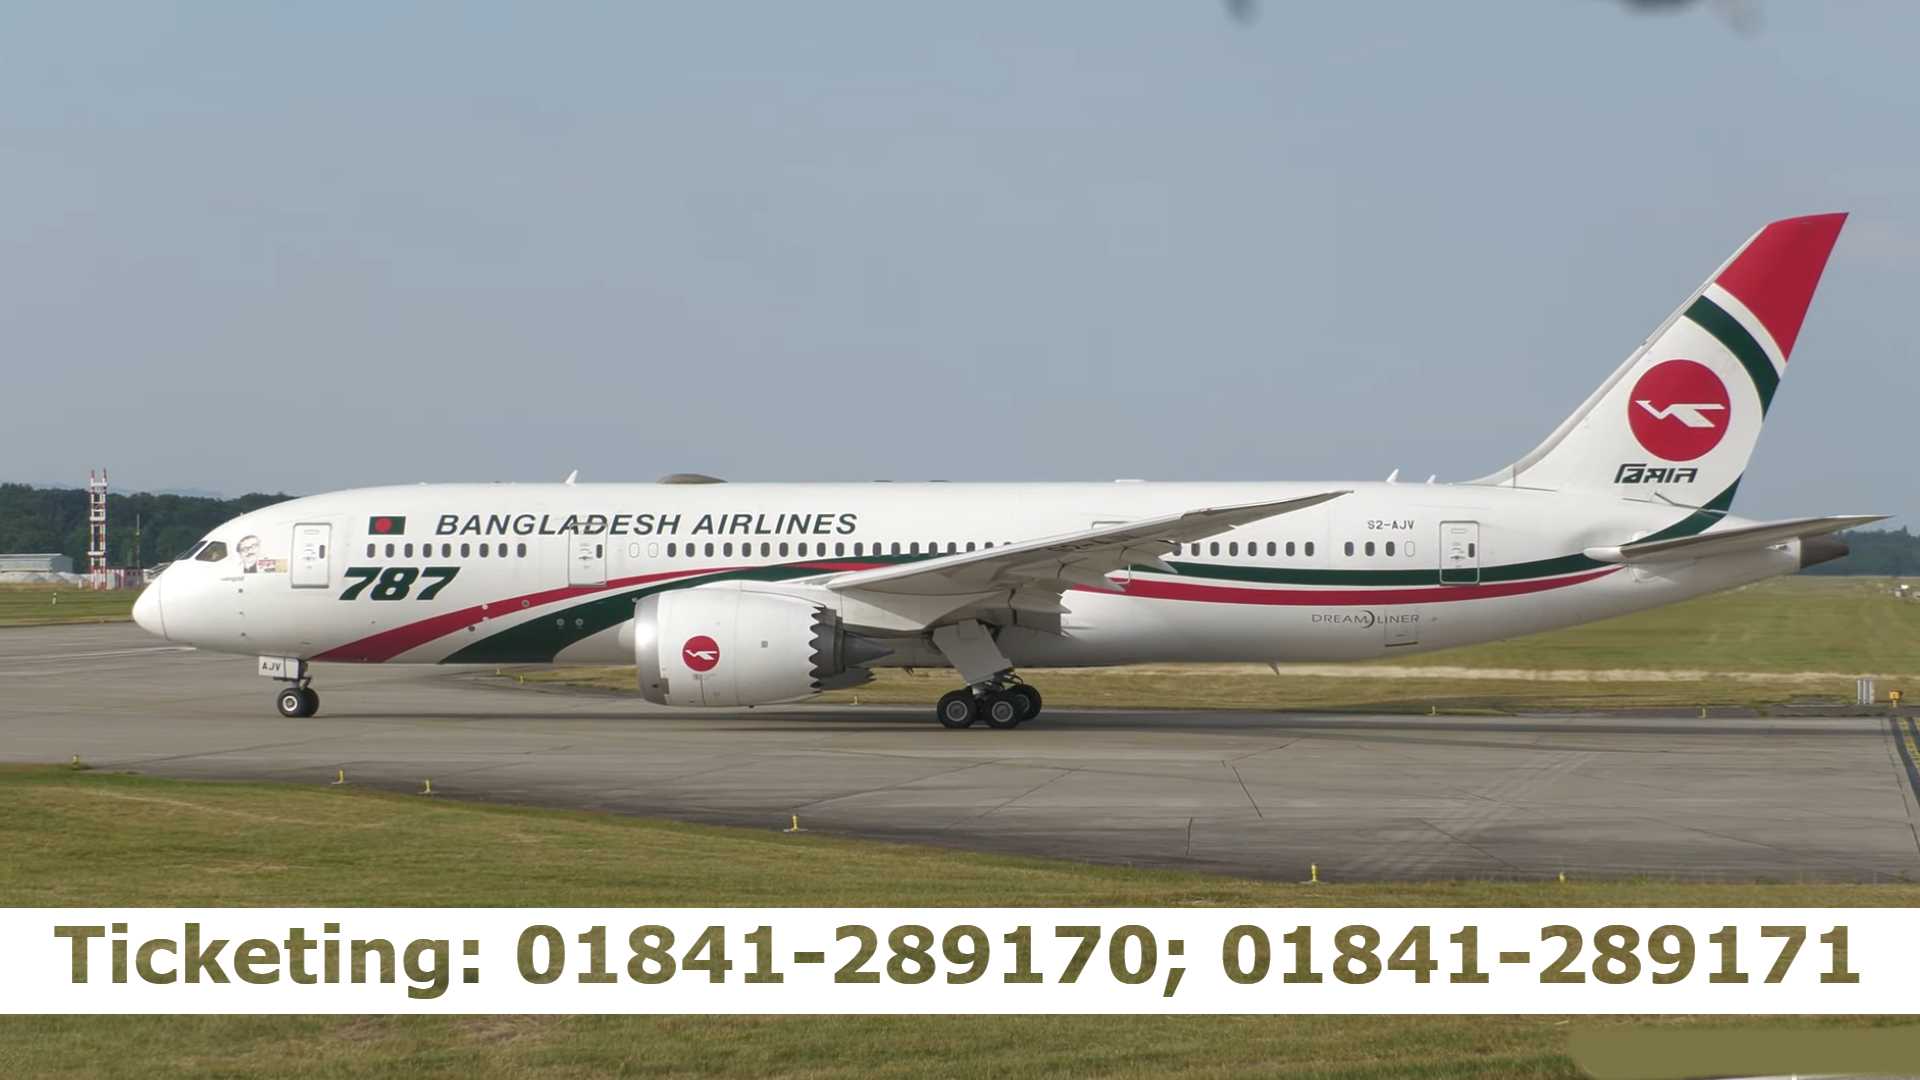 Dhaka to Cox’s Bazar Air Ticket Price & Flight Schedule